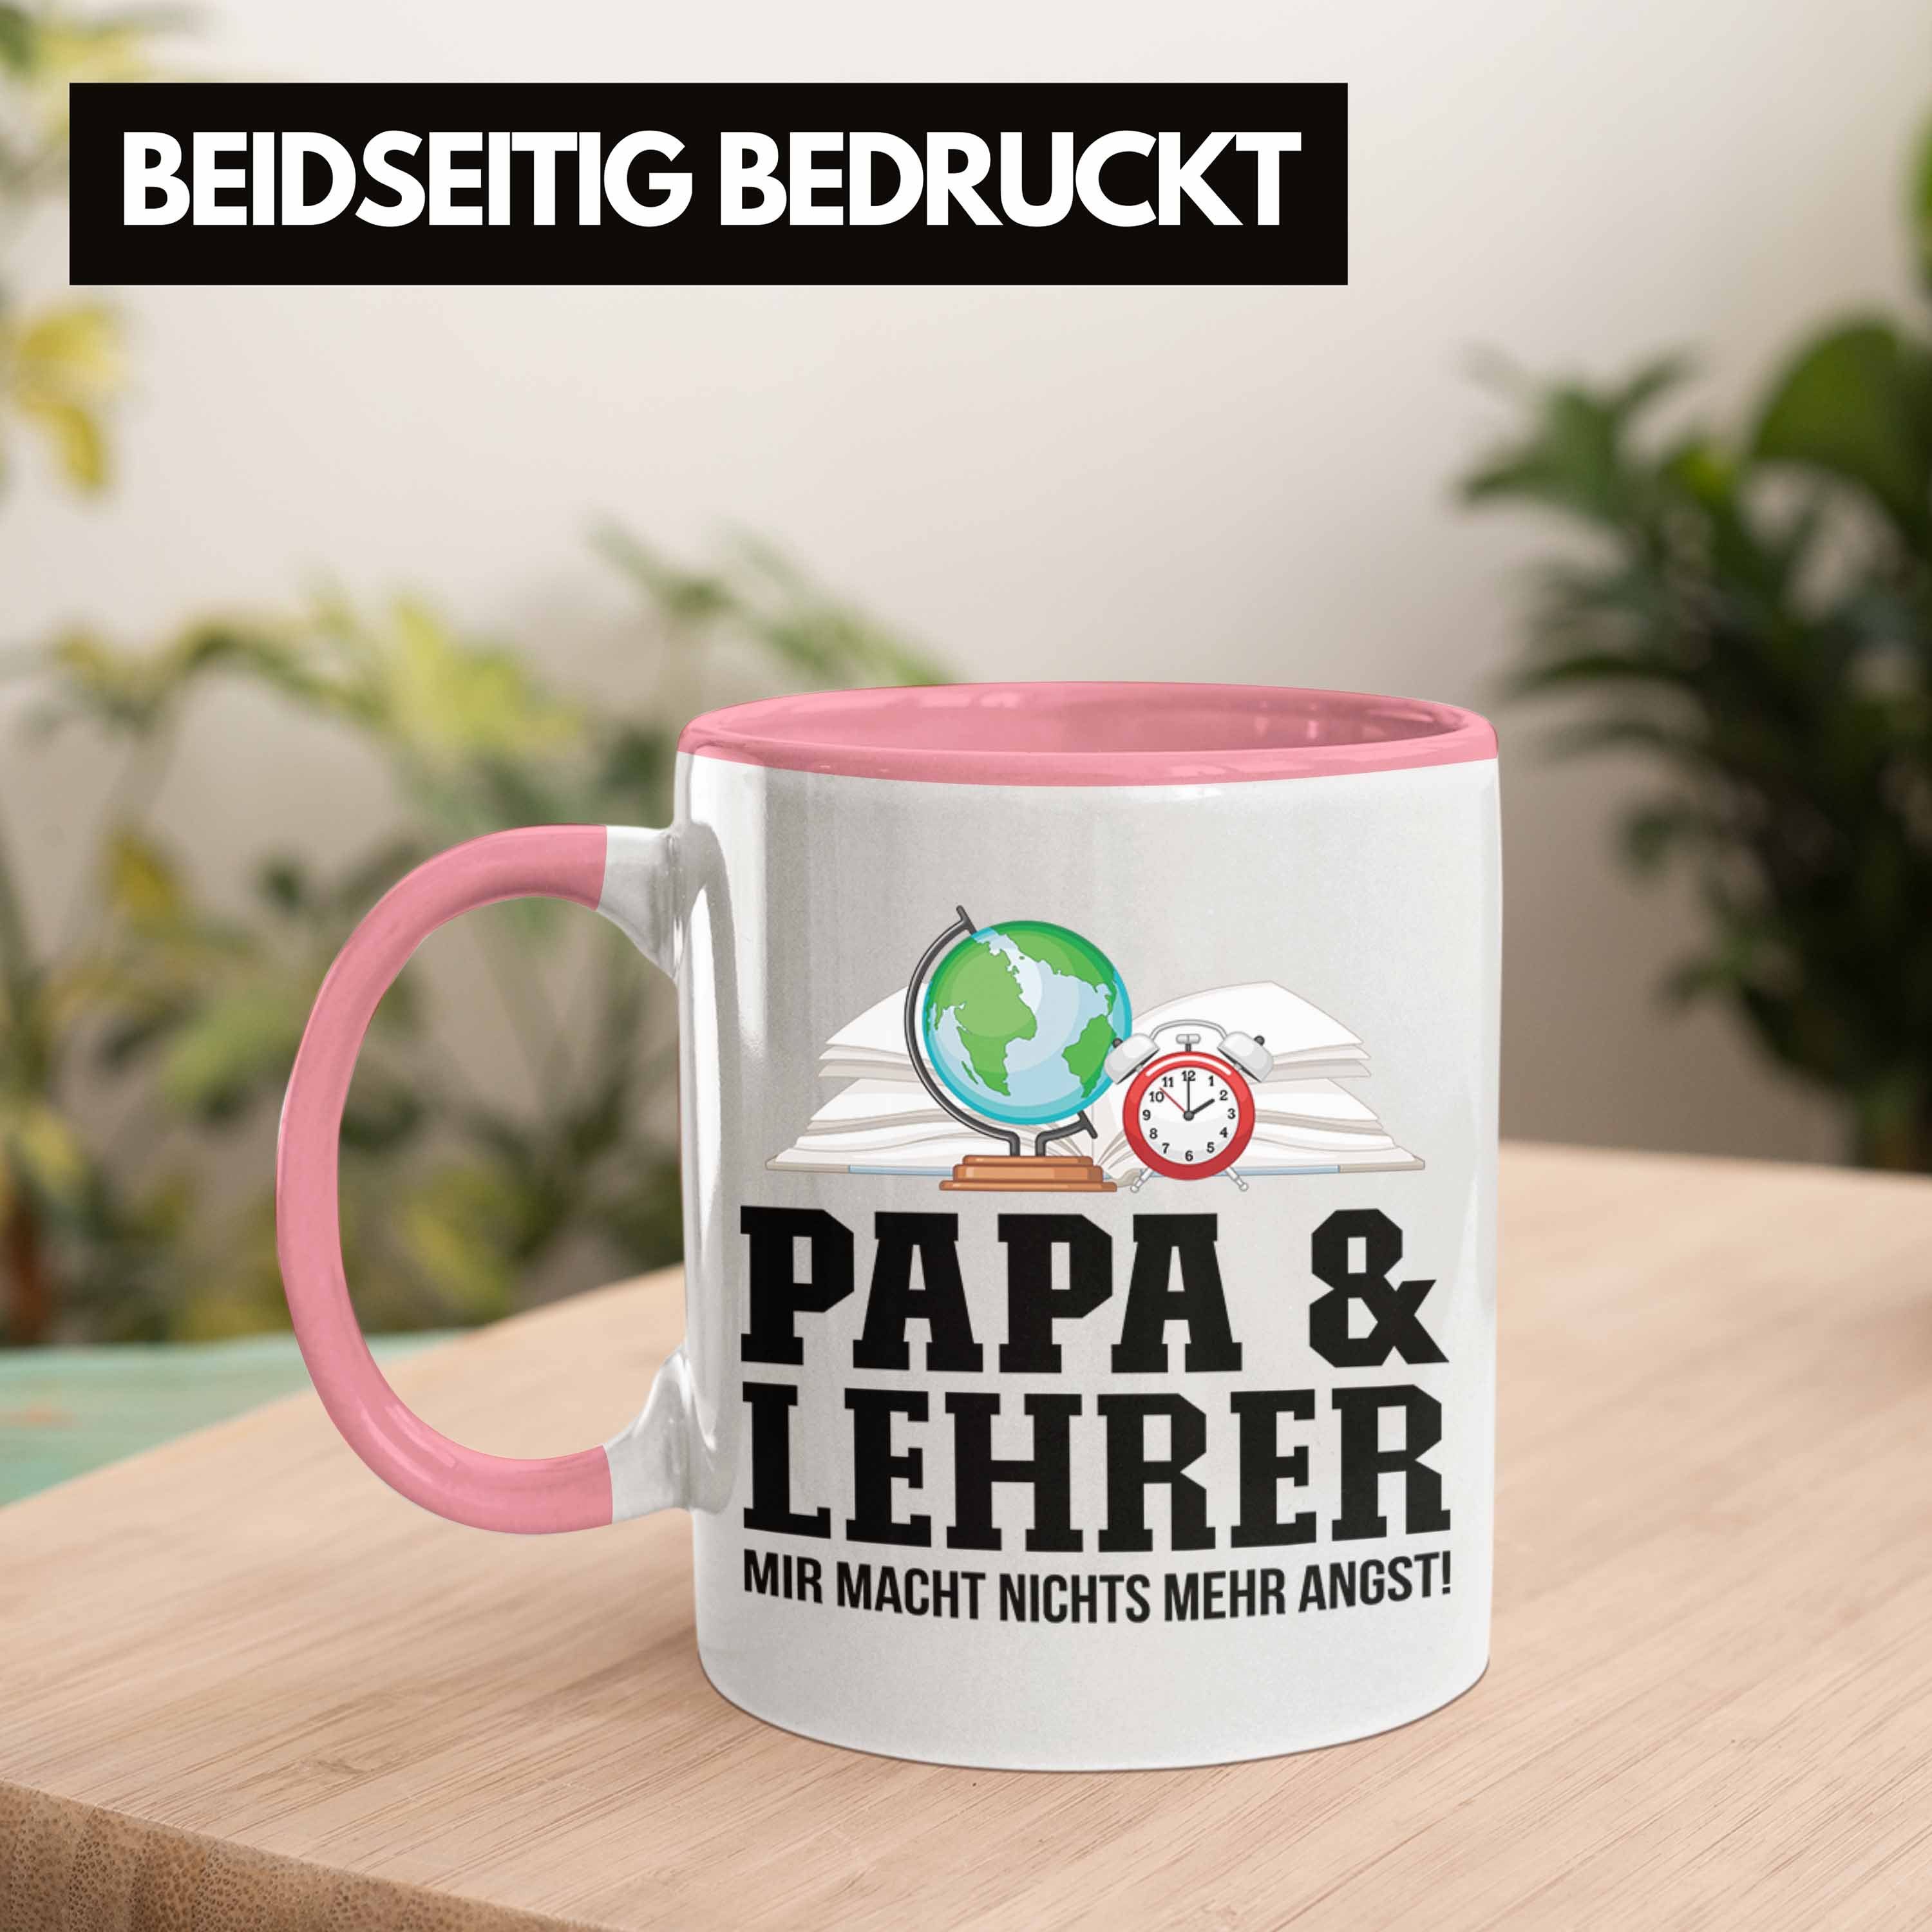 Trendation und Geschenkidee Papa Gebur Lehrer Vater Lehrer - Rosa für Tasse Tasse Trendation